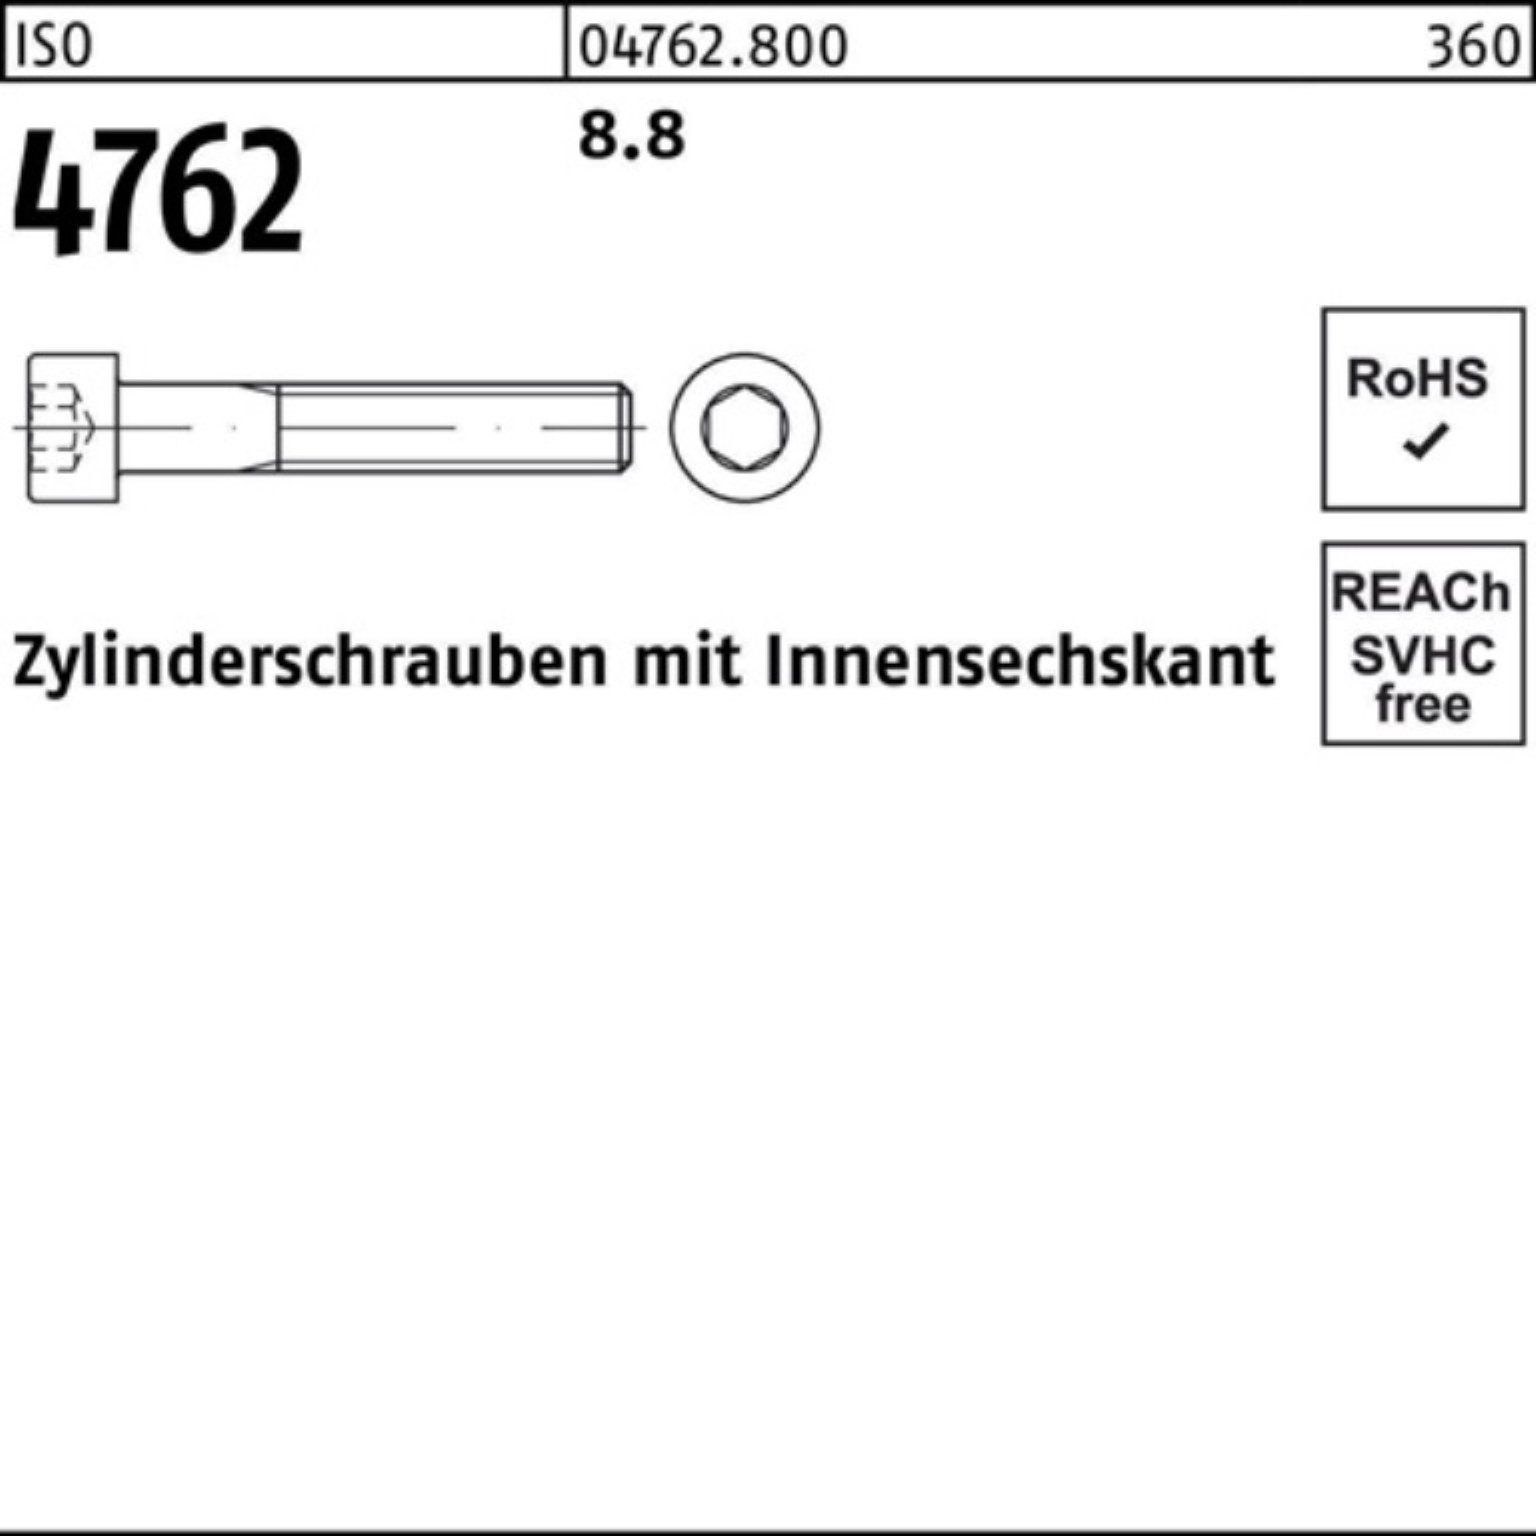 Erstes direkt geführtes Geschäft Reyher Zylinderschraube 100er Pack Zylinderschraube Innen-6kt 230 1 M20x I ISO 8.8 Stück 4762